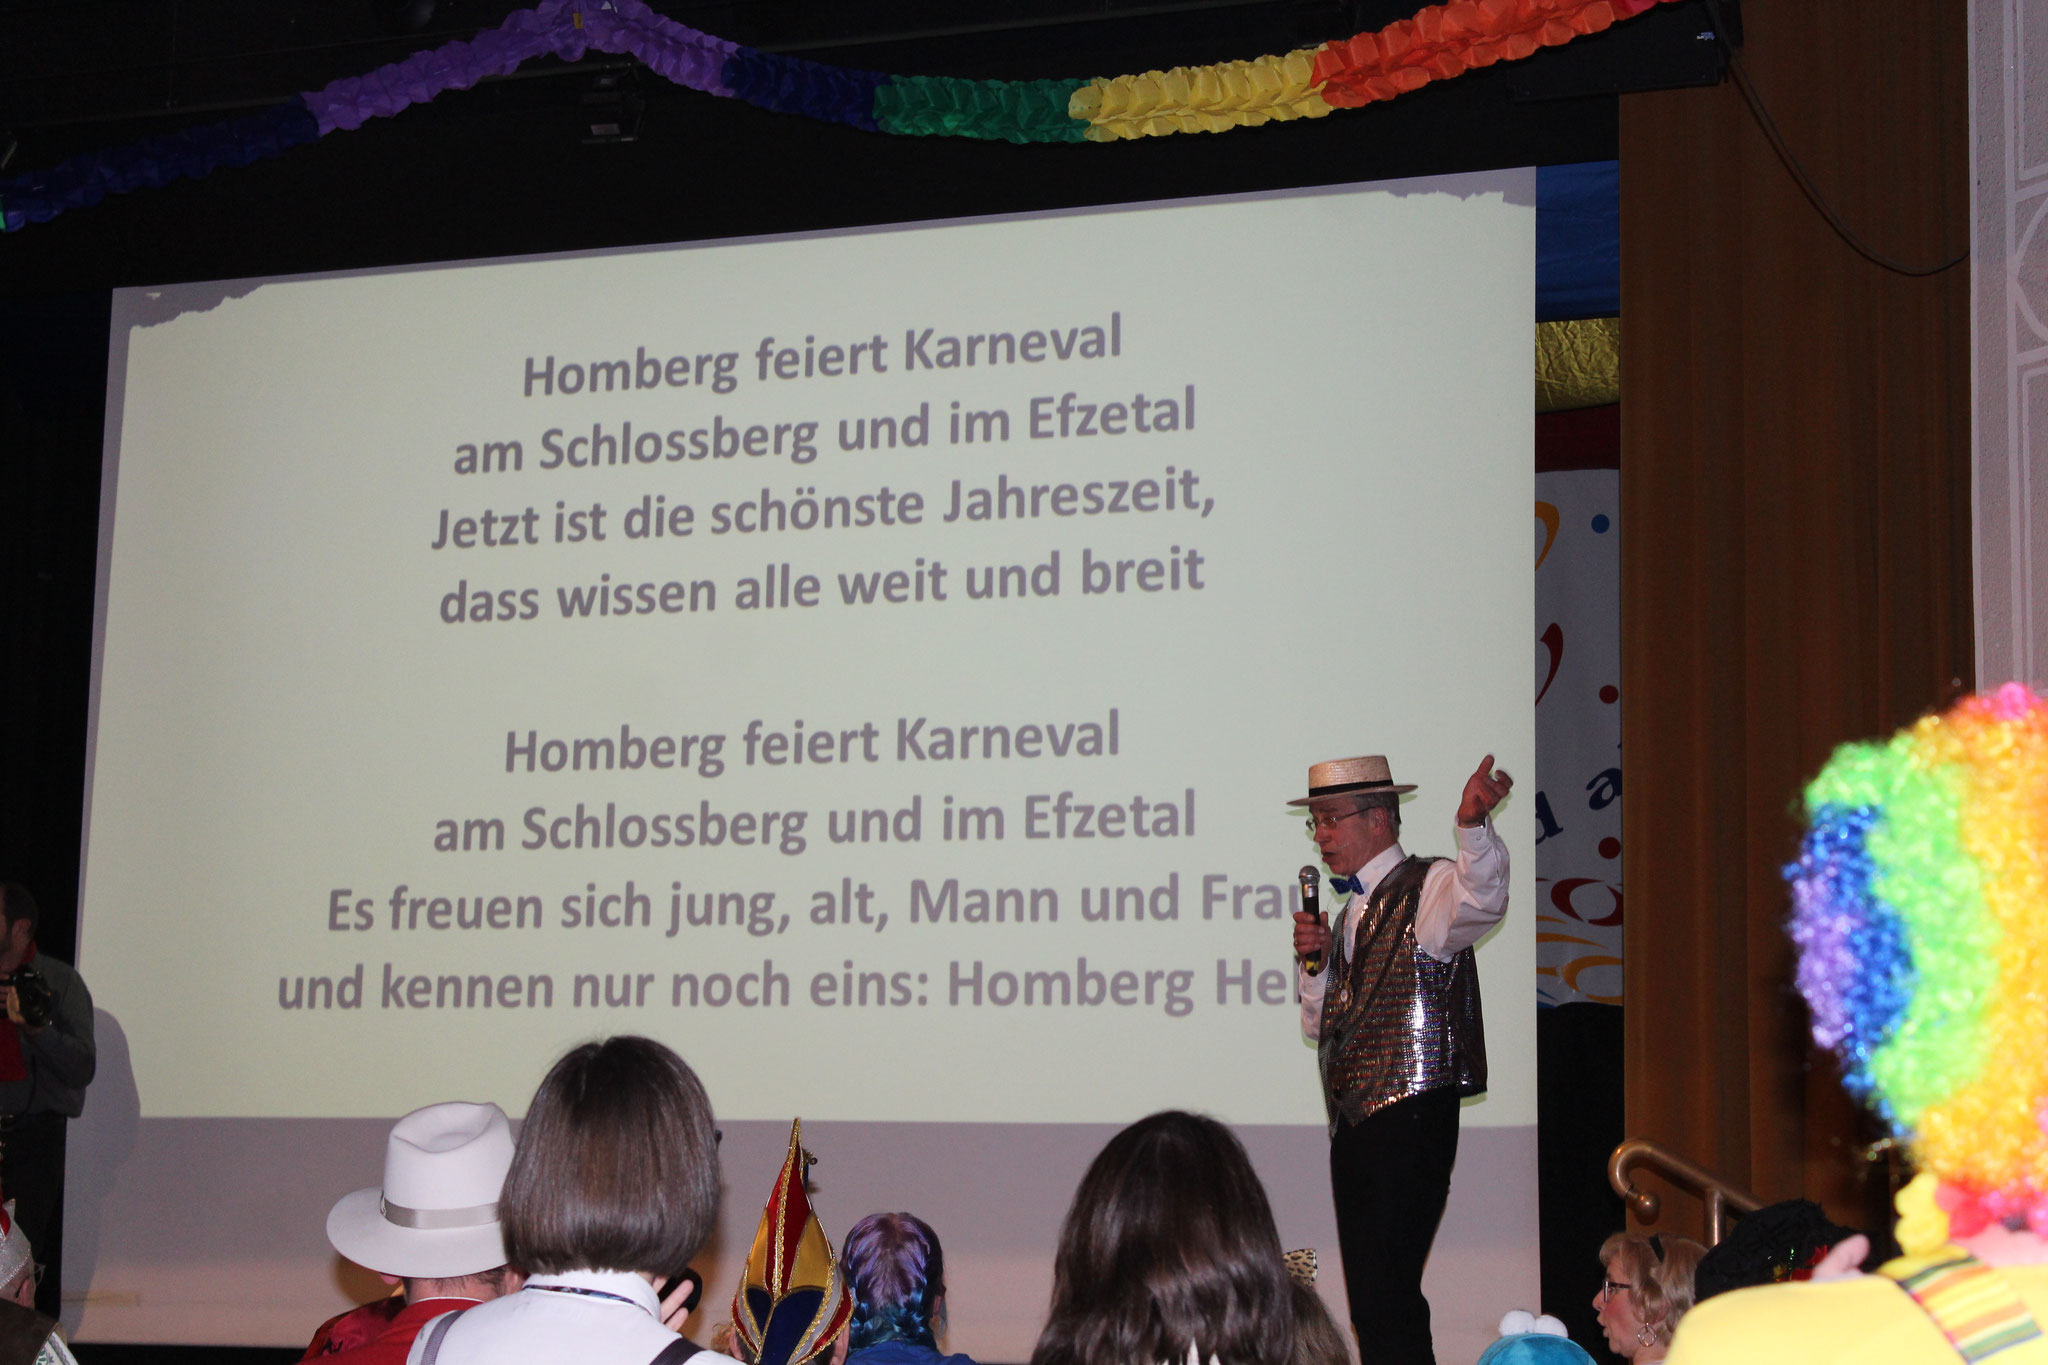 2019: "Der Böth'ser" mit seiner ultimativen KCV-Hymne, sieh erklang erstmalig 2000 mit Eckhard Böth!